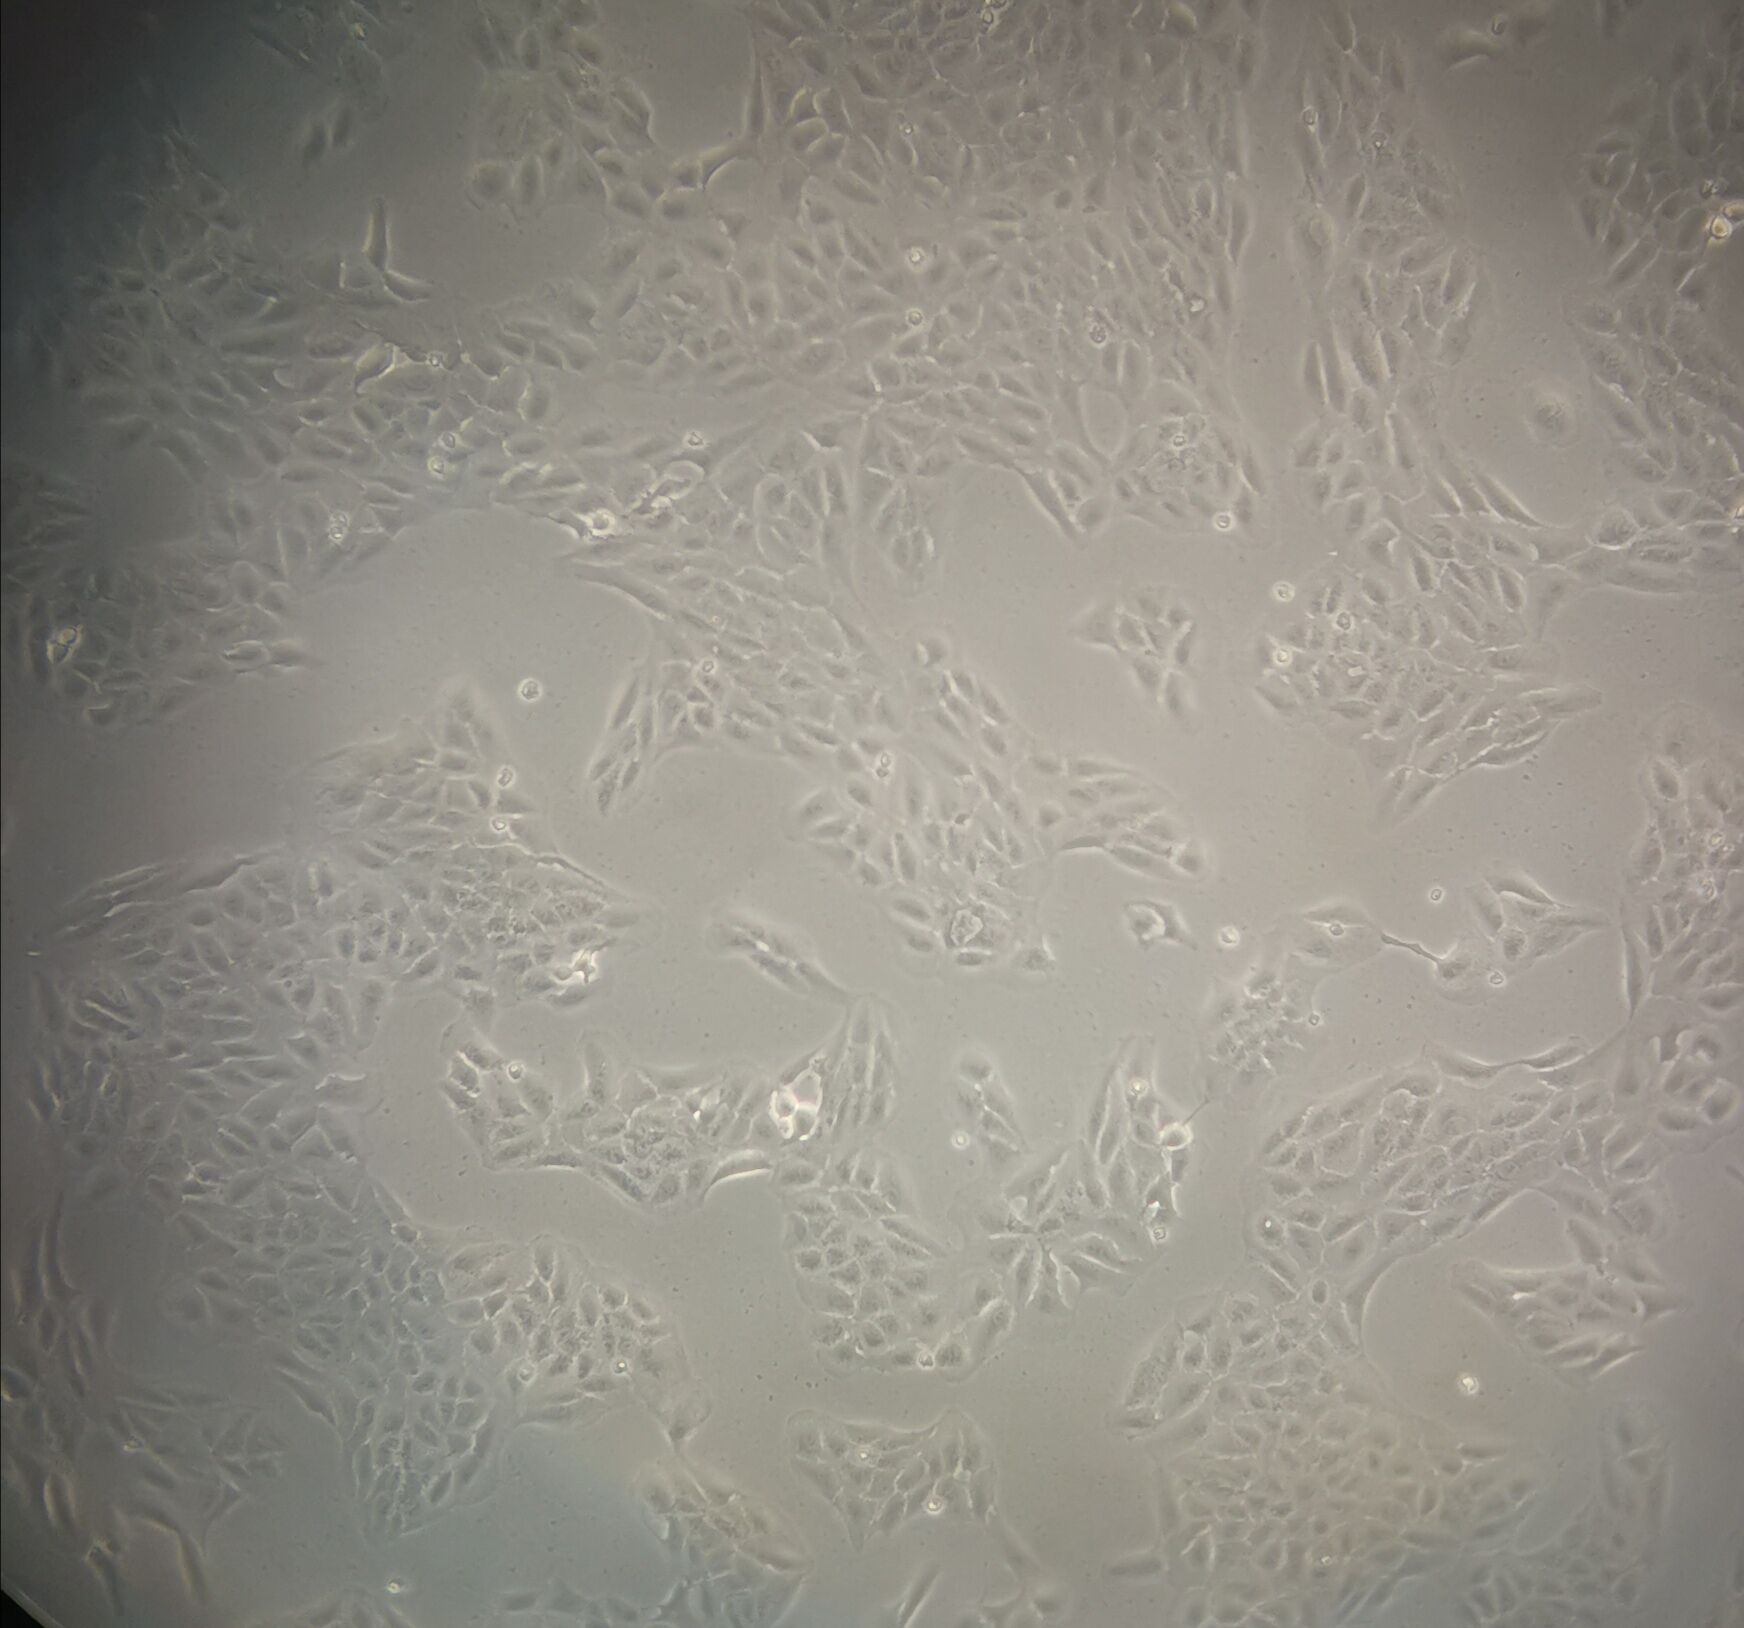 A-1847 Cells|人卵巢癌克隆细胞,A-1847 Cells